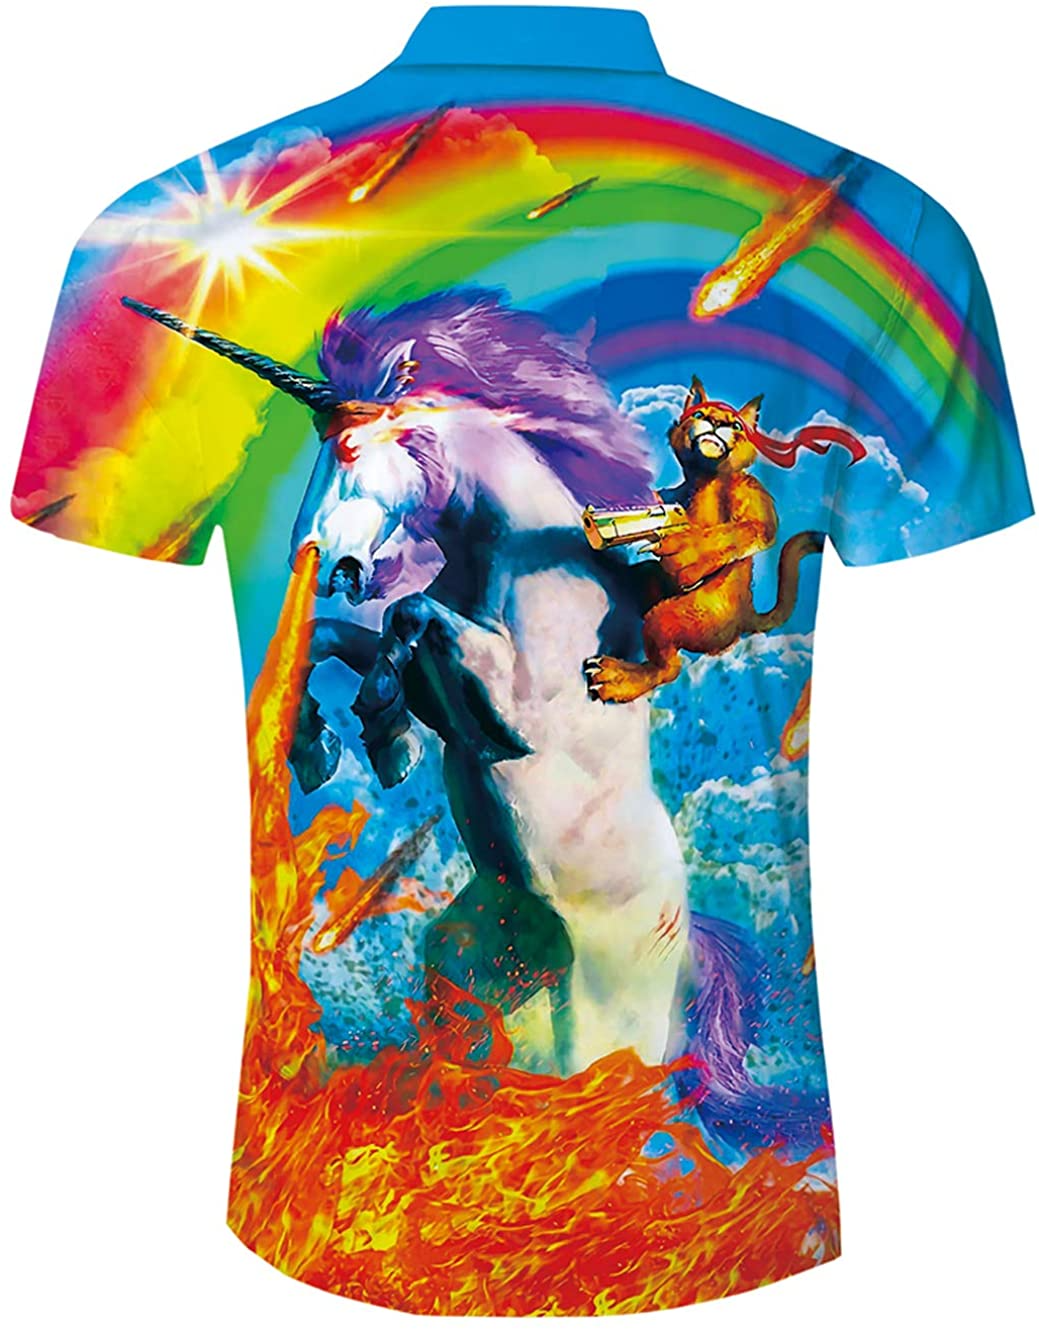 Rainbow Pride Hawaiian Shirt For Lgbtq Hawaiian Summer Aloha Beach Shirts For Holiday